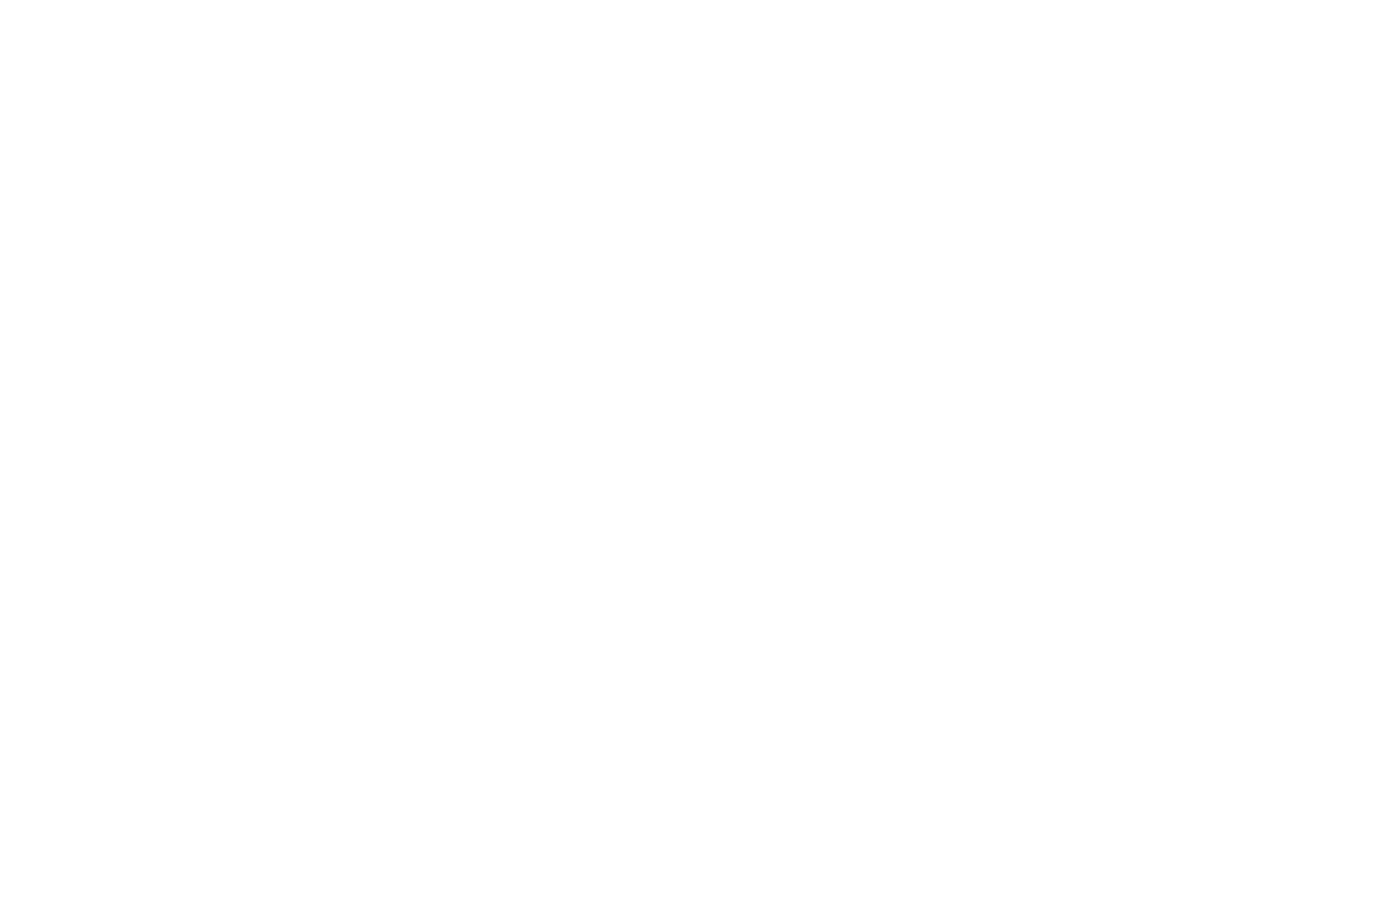 Кейс сервиса BRANDNATION - Фирменный стиль и брендинг кафе фастфуда. Брендинговое агентство BRANDNATION в Москве и Санкт-Петербурге. Услуги: разработка логотипа и фирменного стиля, дизайн упаковки, брендбук, ребрендинг, разработка сайта.